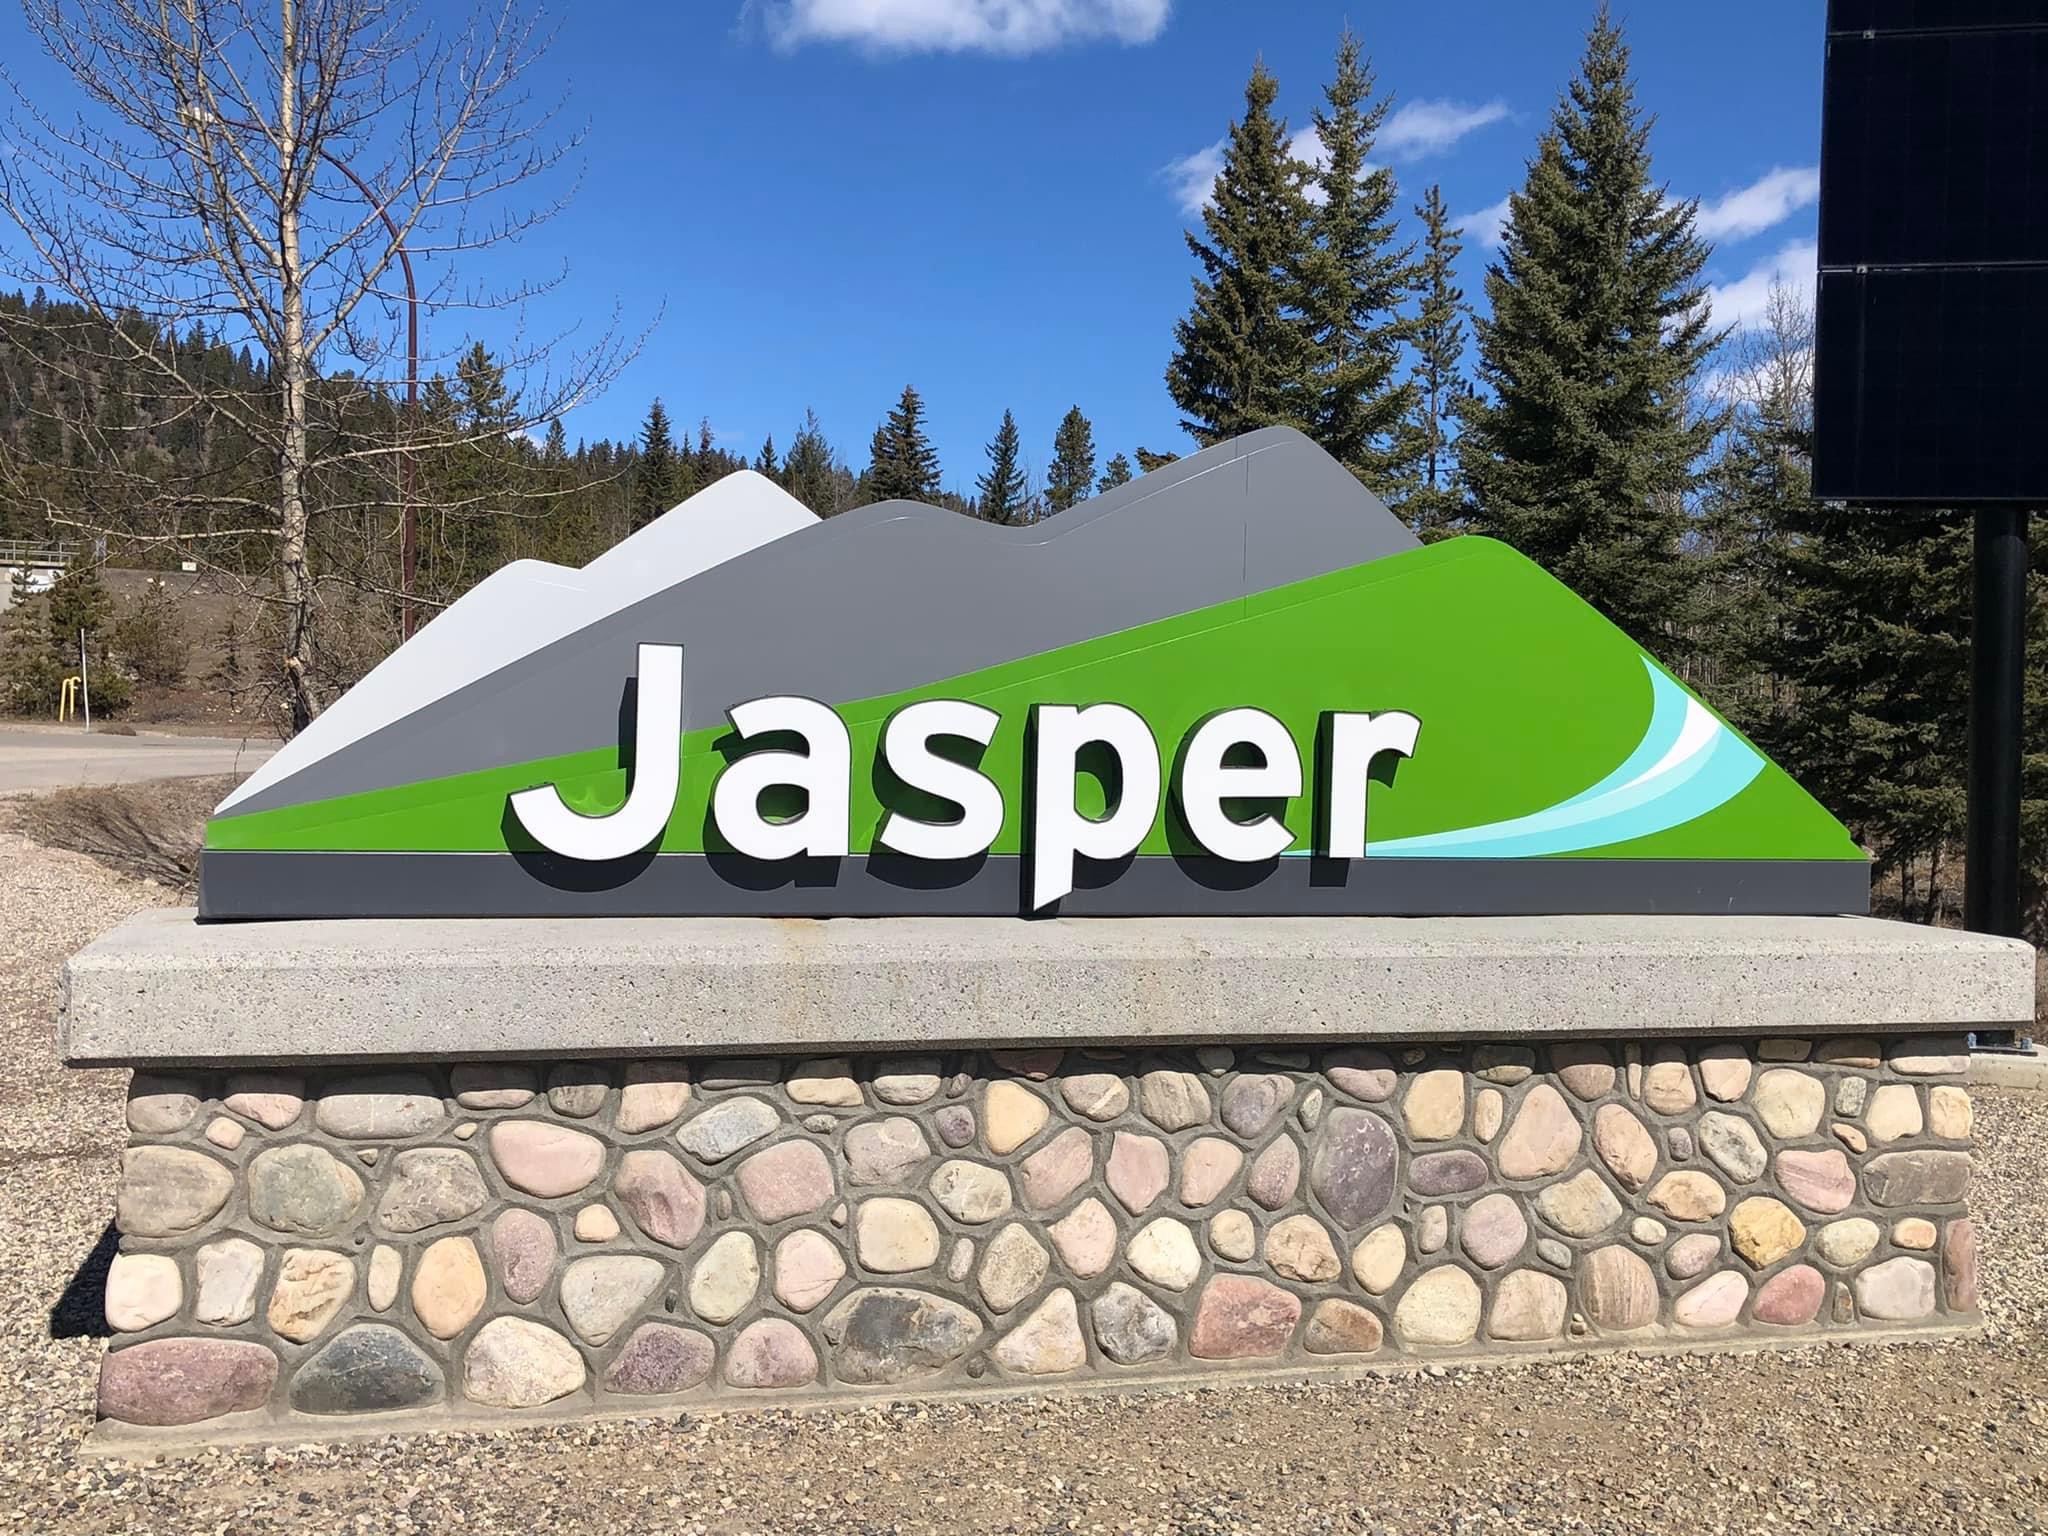 Jasper Road trip